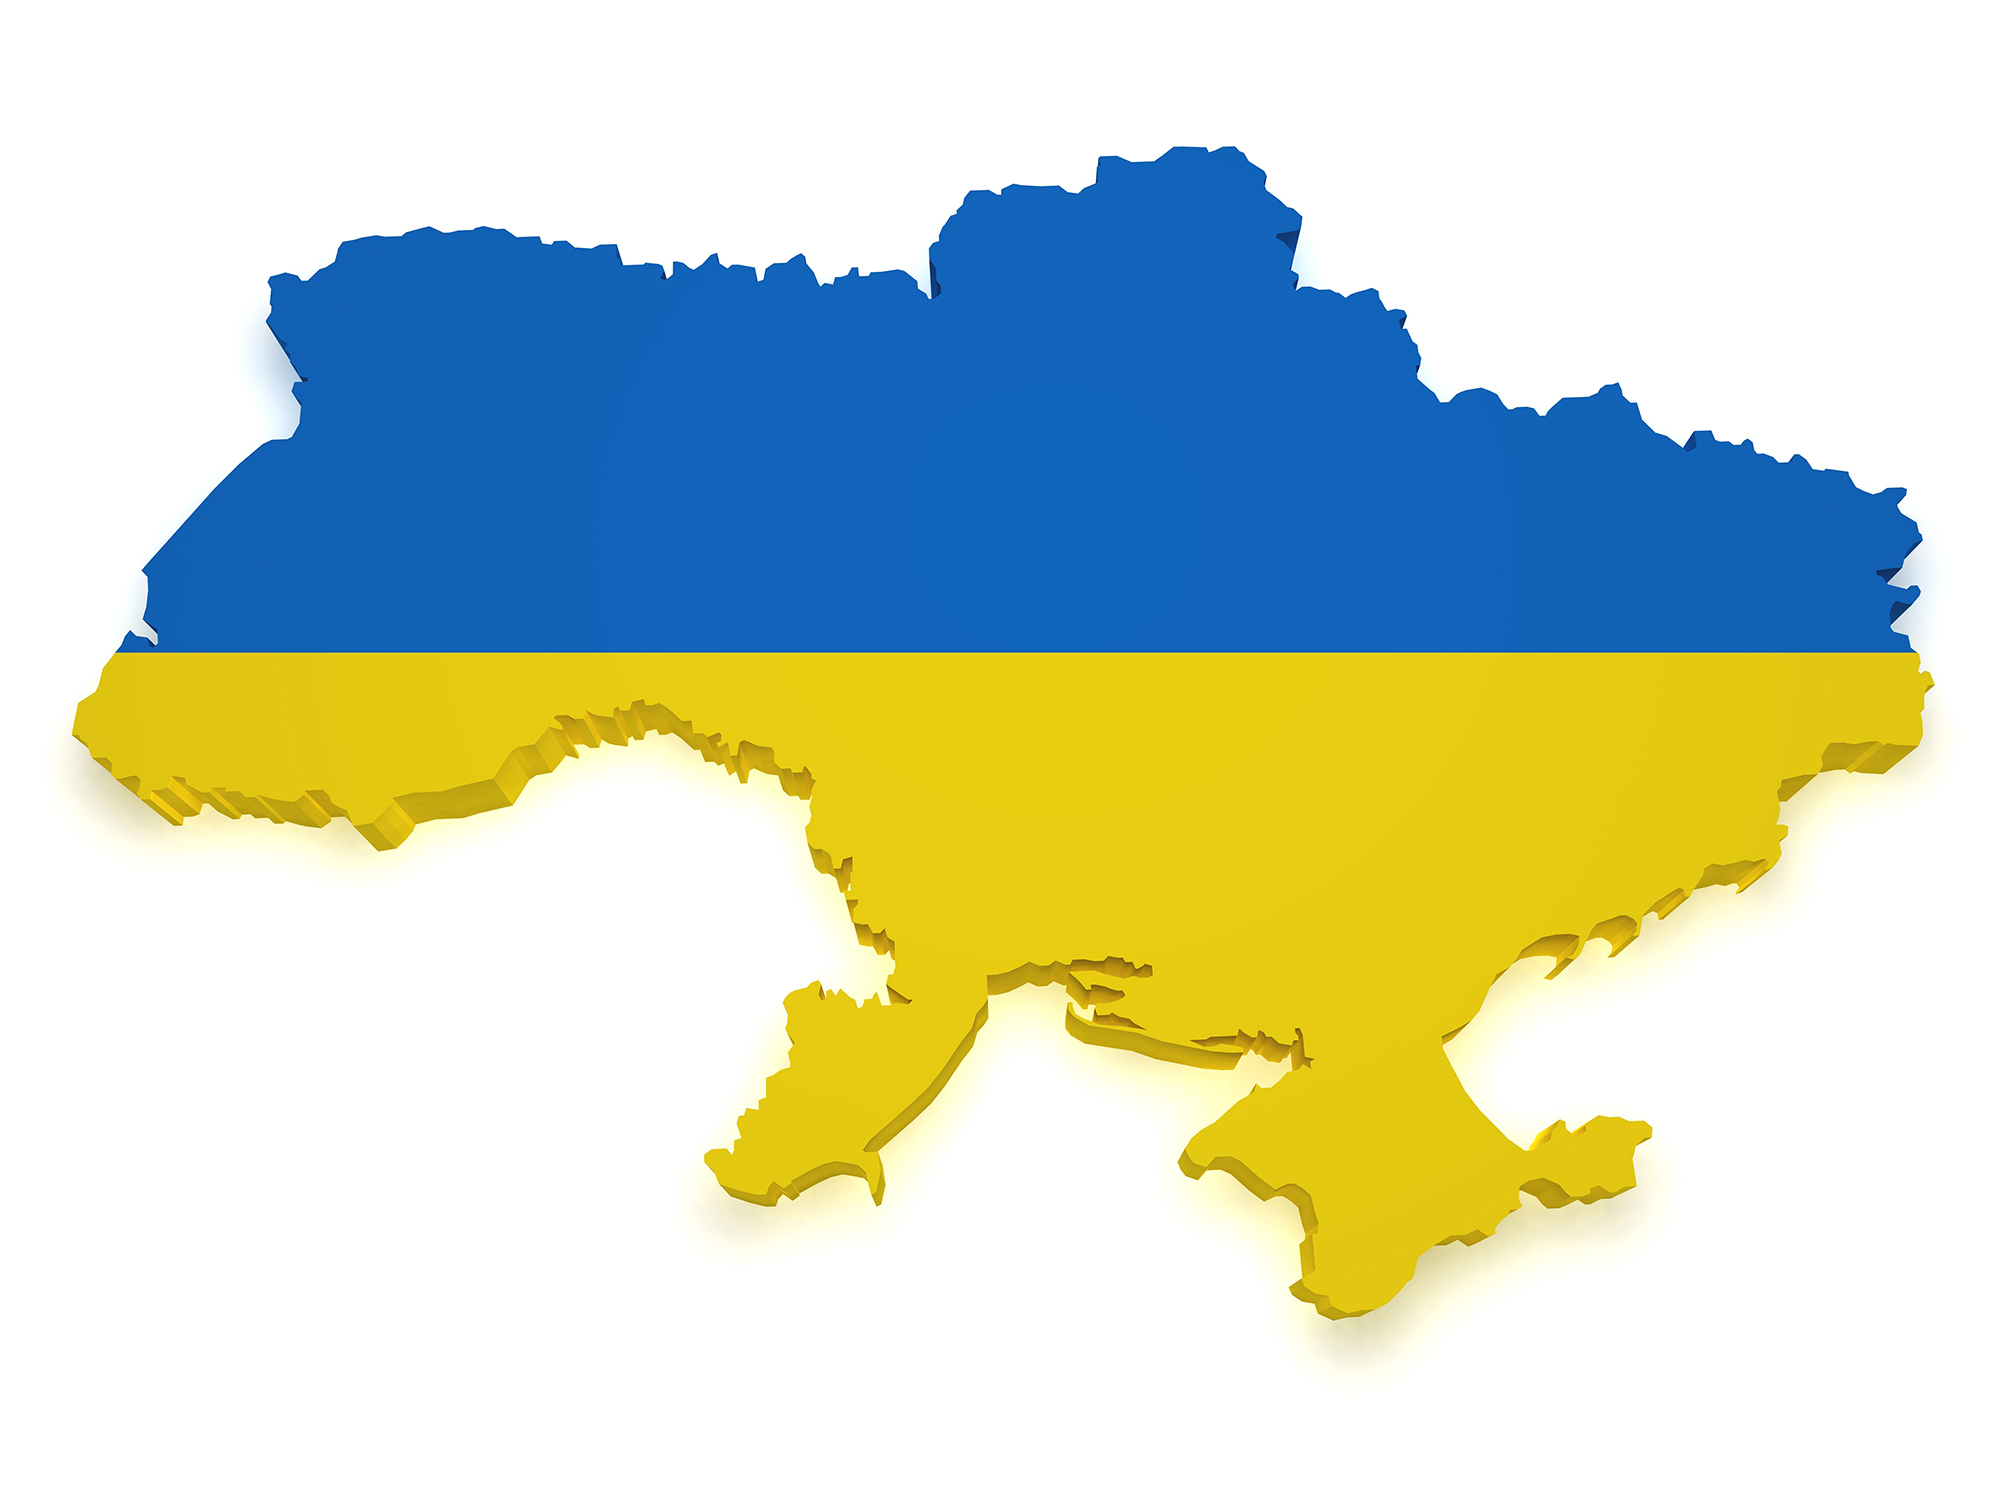 Muurame antaa tukea Ukrainan sodan uhreille 1 euro / asukas